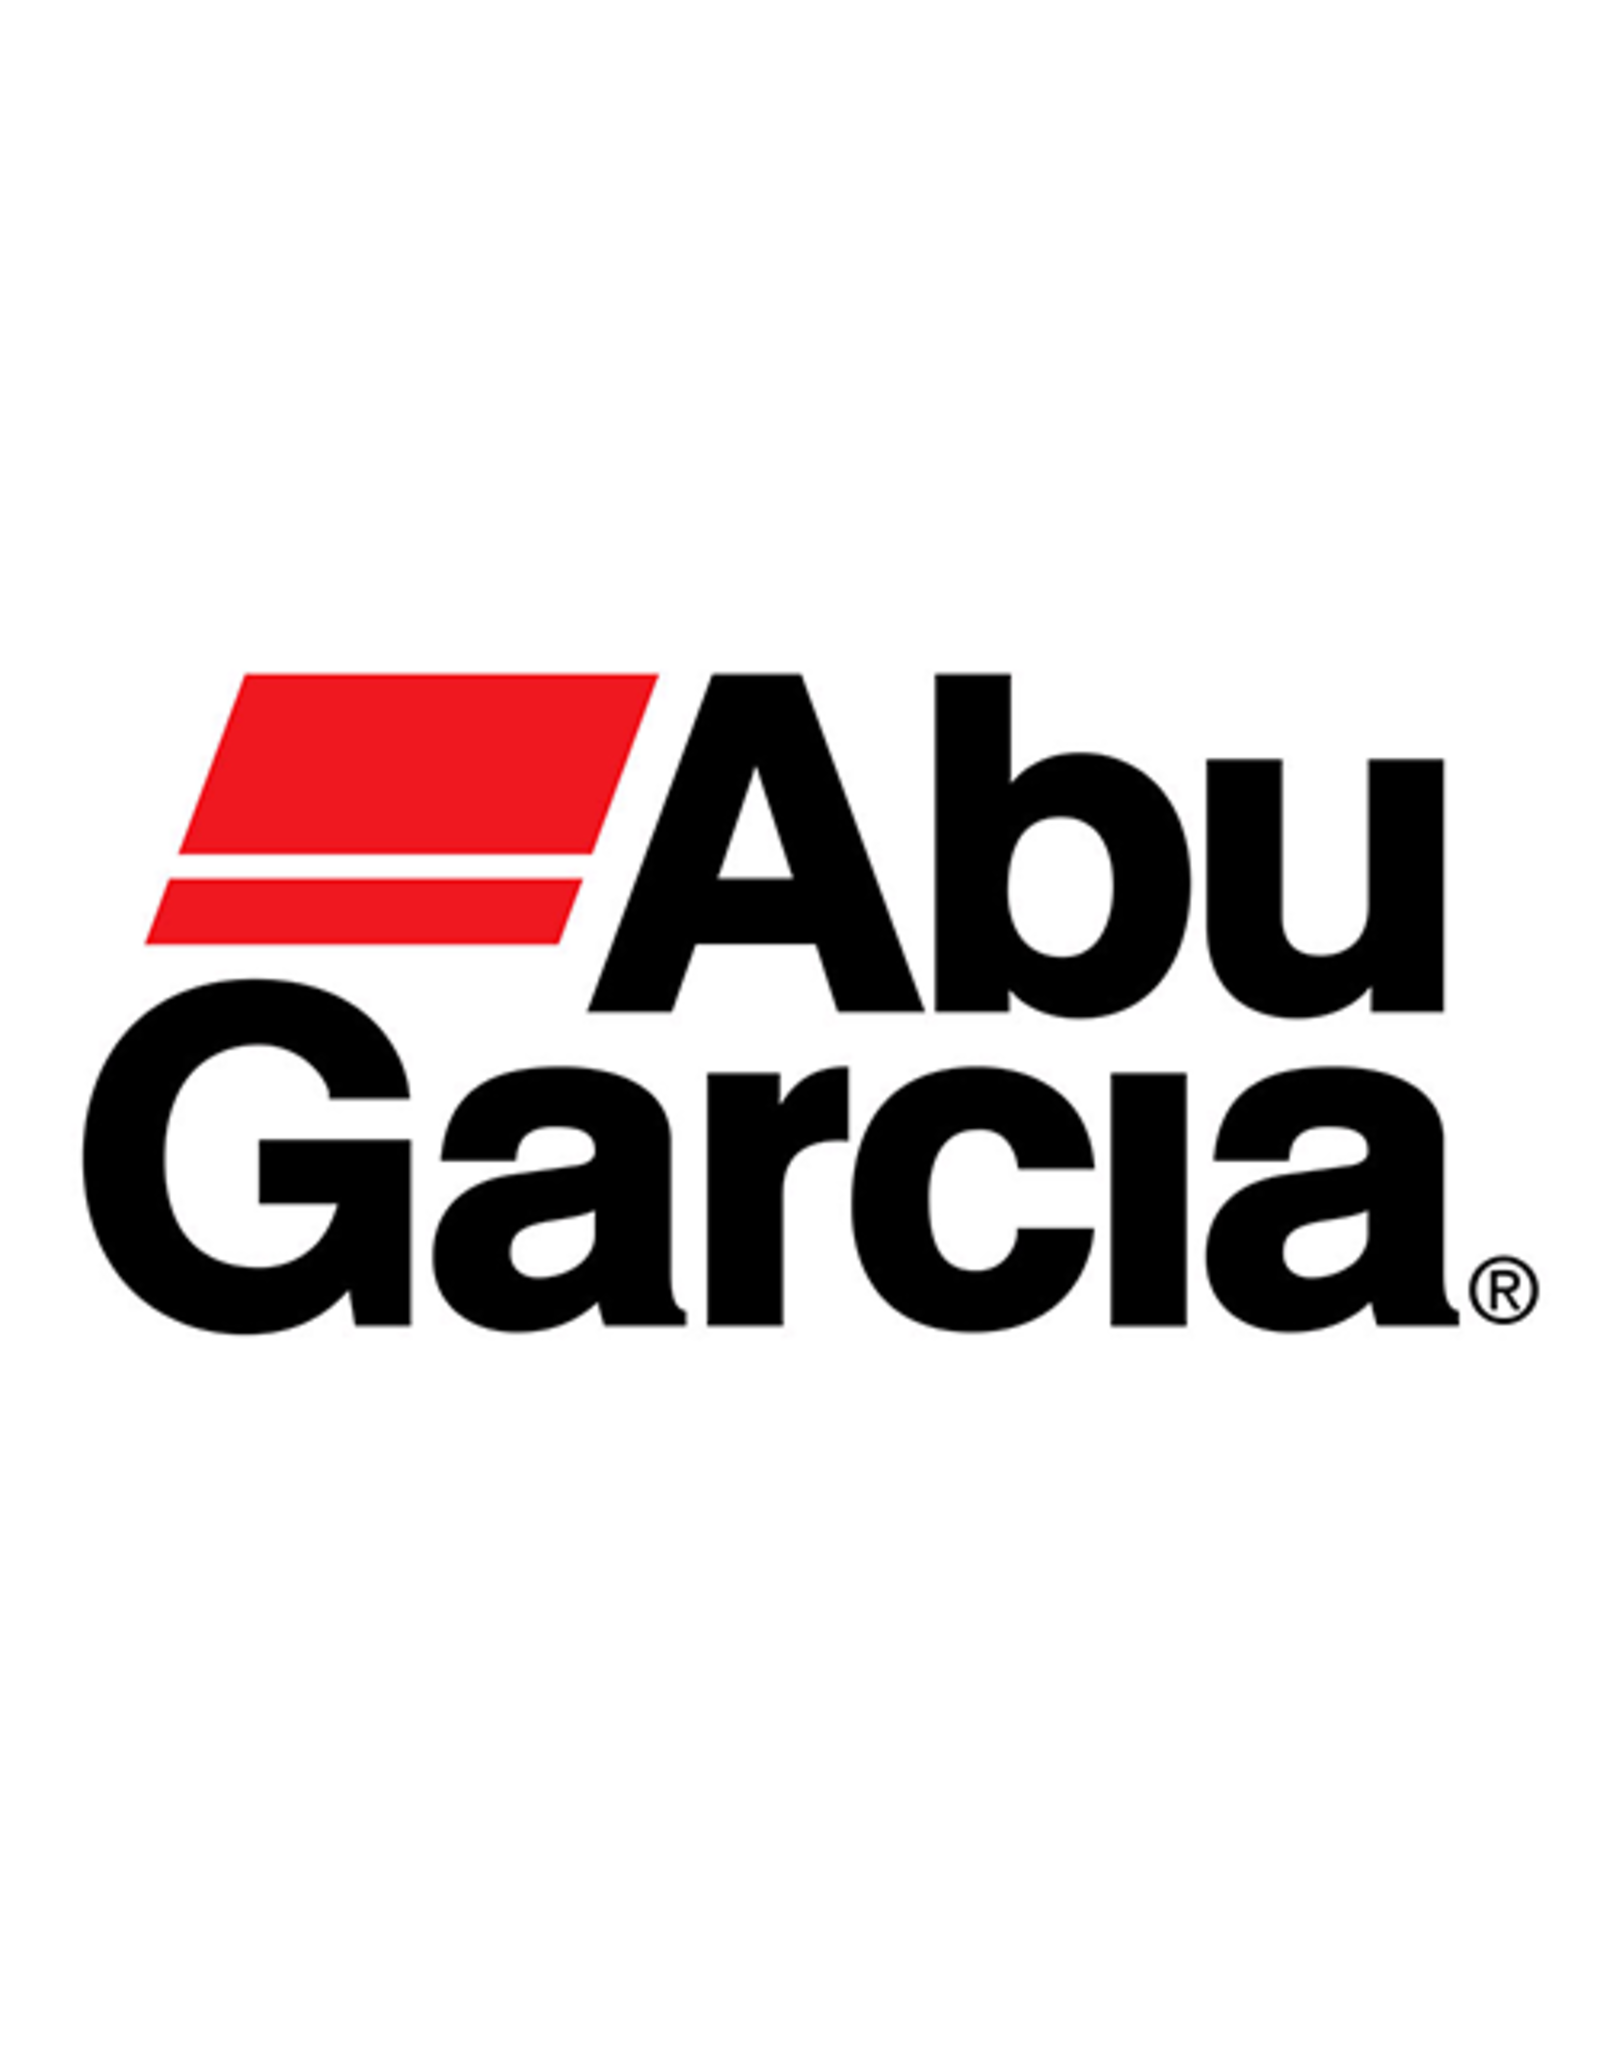 Abu Garcia 21434  DRIVE SHAFT / NLA